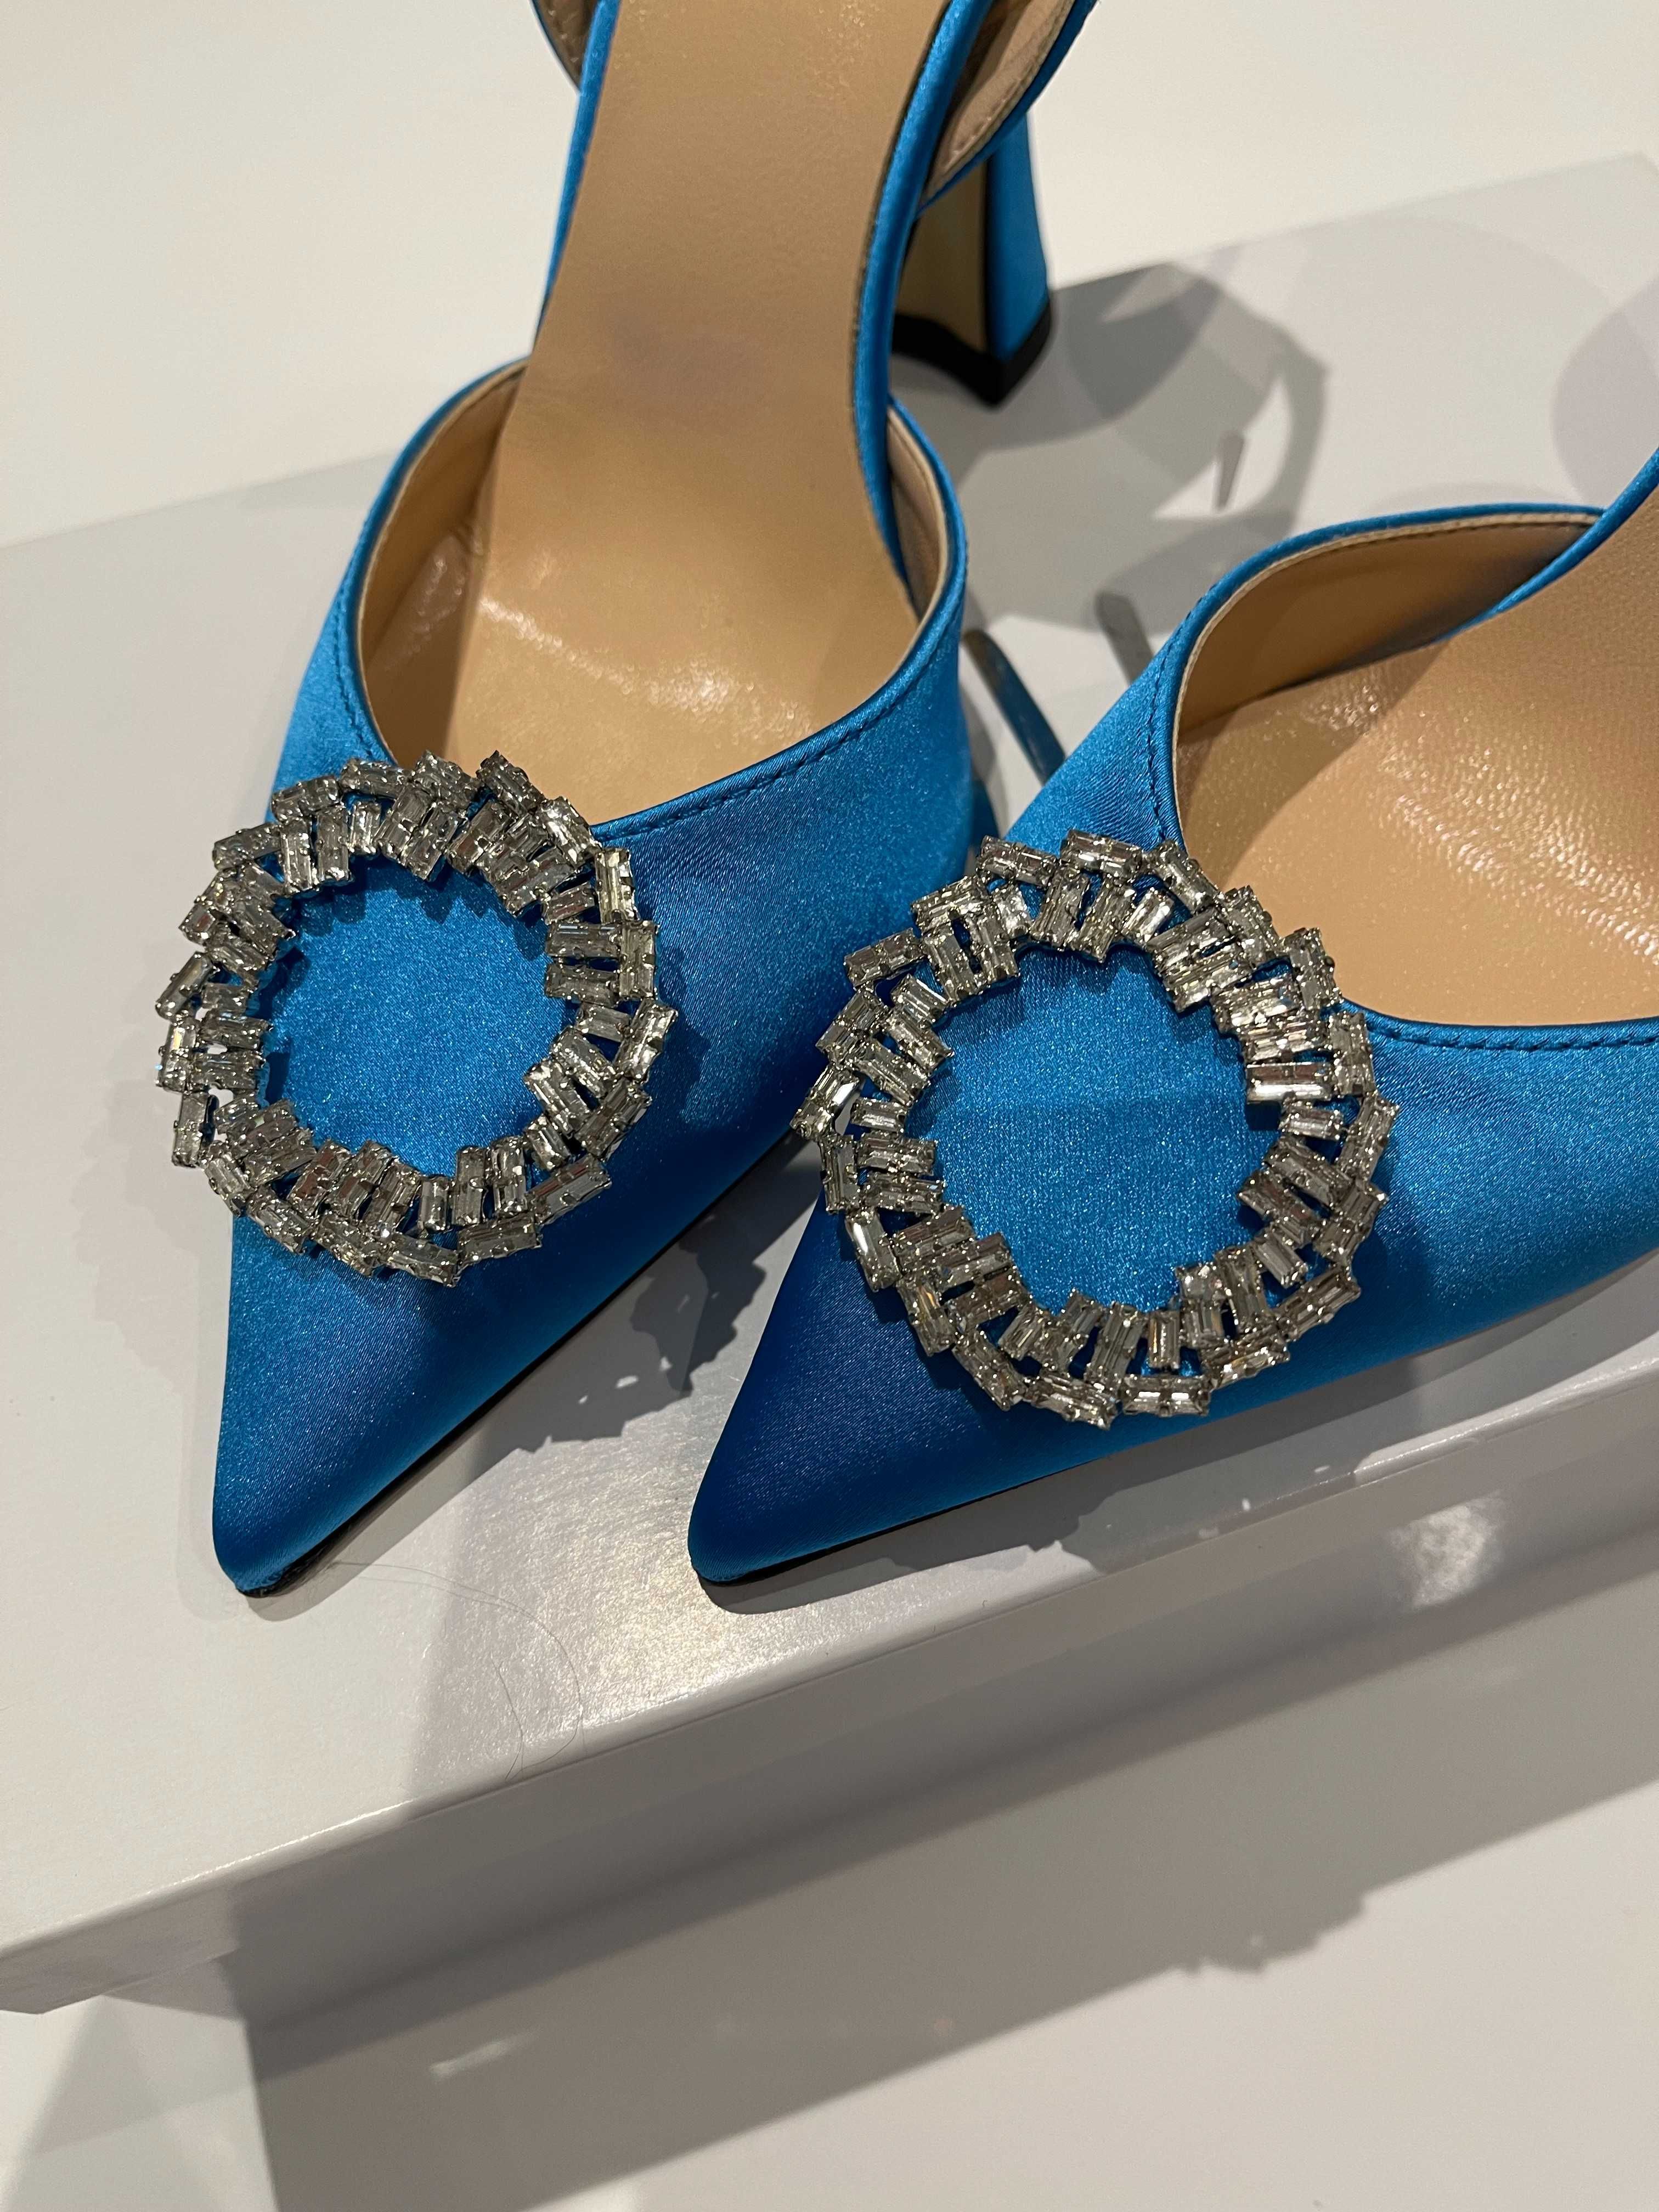 Sapatos Senhora OVYé By Cristina Lucchi - NOVOS na Caixa